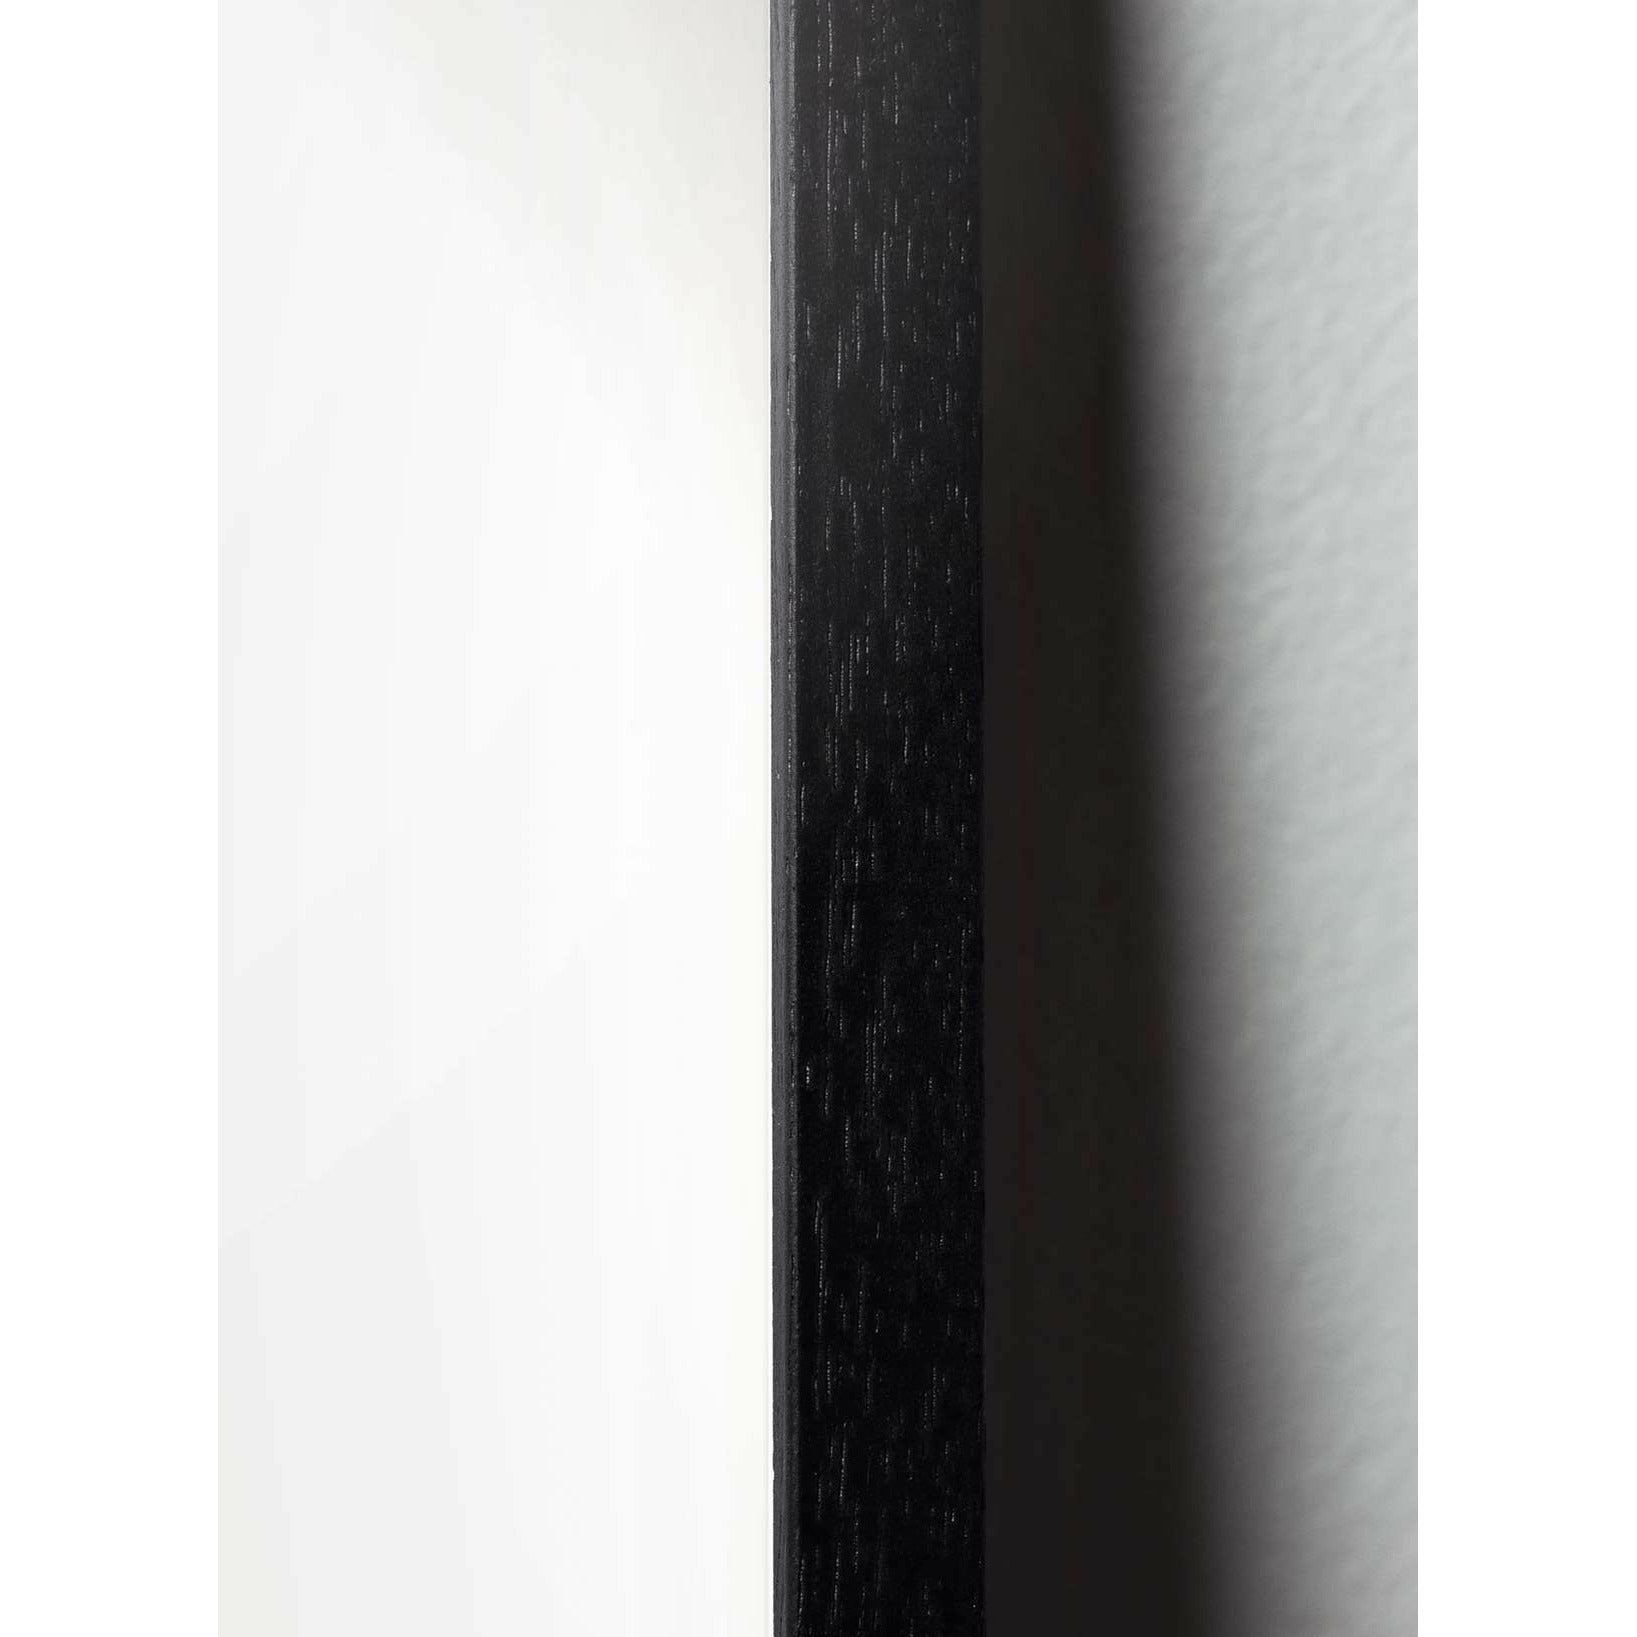 Póster de línea de cono de pino de creación, marco en madera lacada negra 50x70 cm, fondo blanco